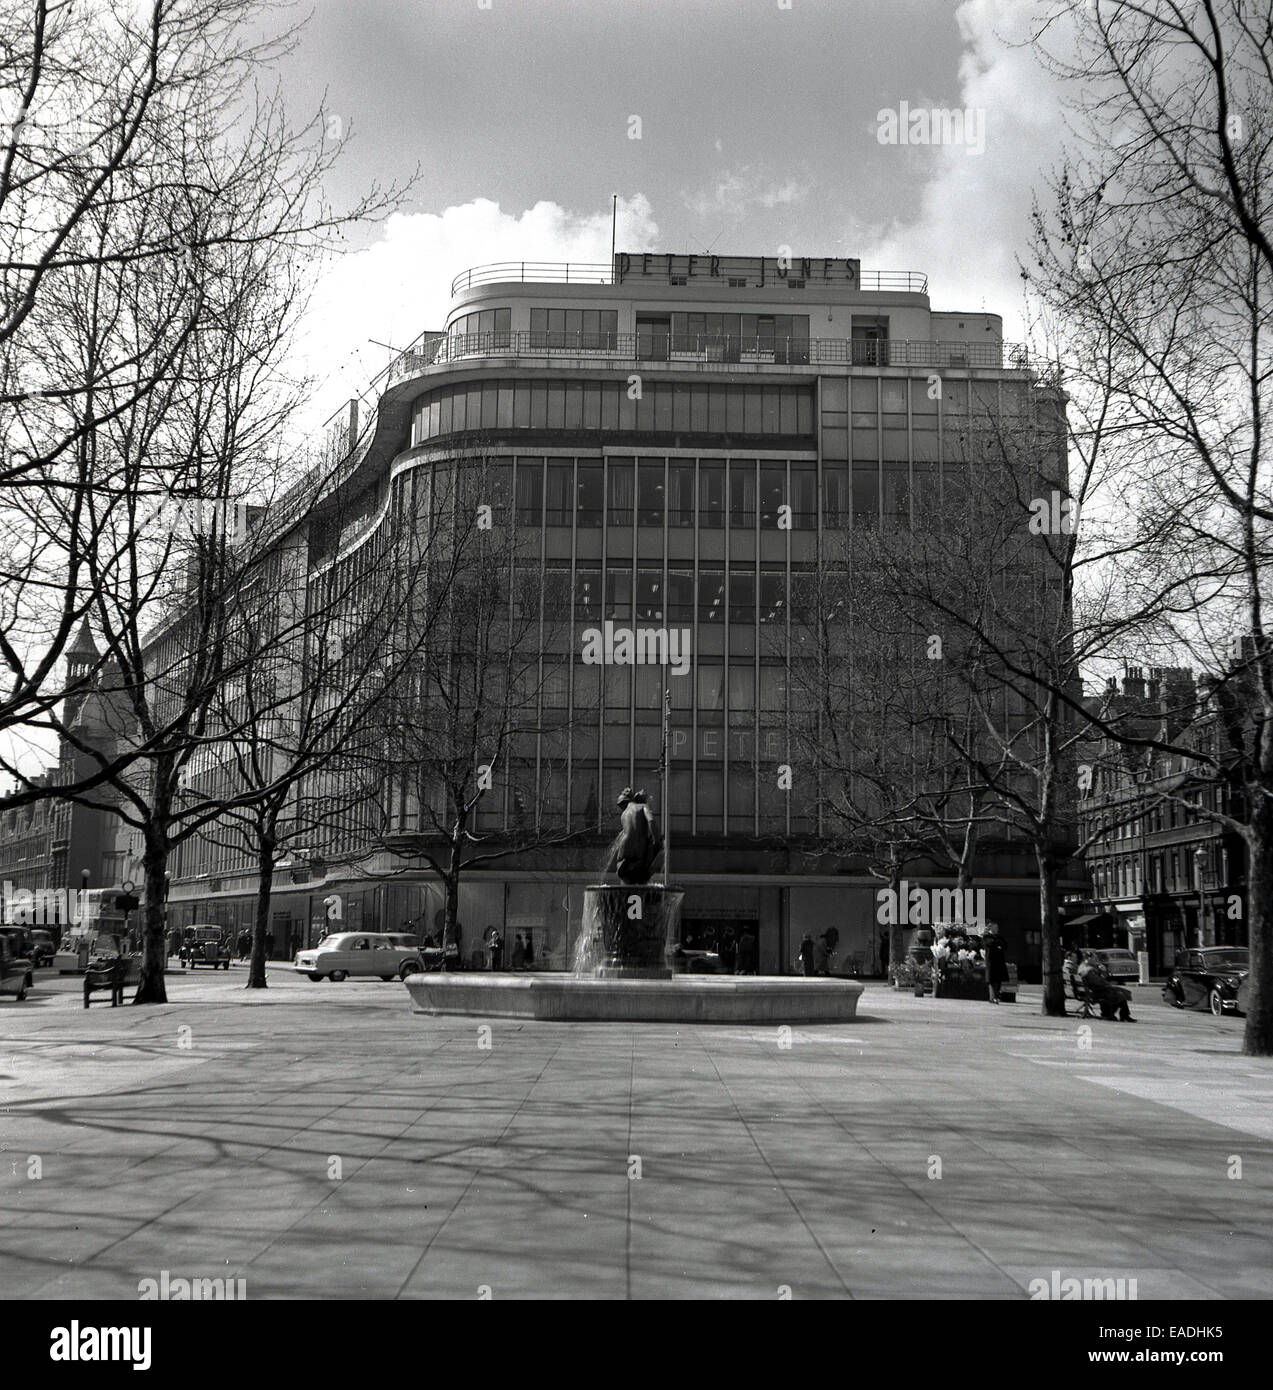 Années 1950, historiques, l'extérieur de la célèbre grand magasin Peter Jones, King's Road, Chelsea, Londres. Banque D'Images